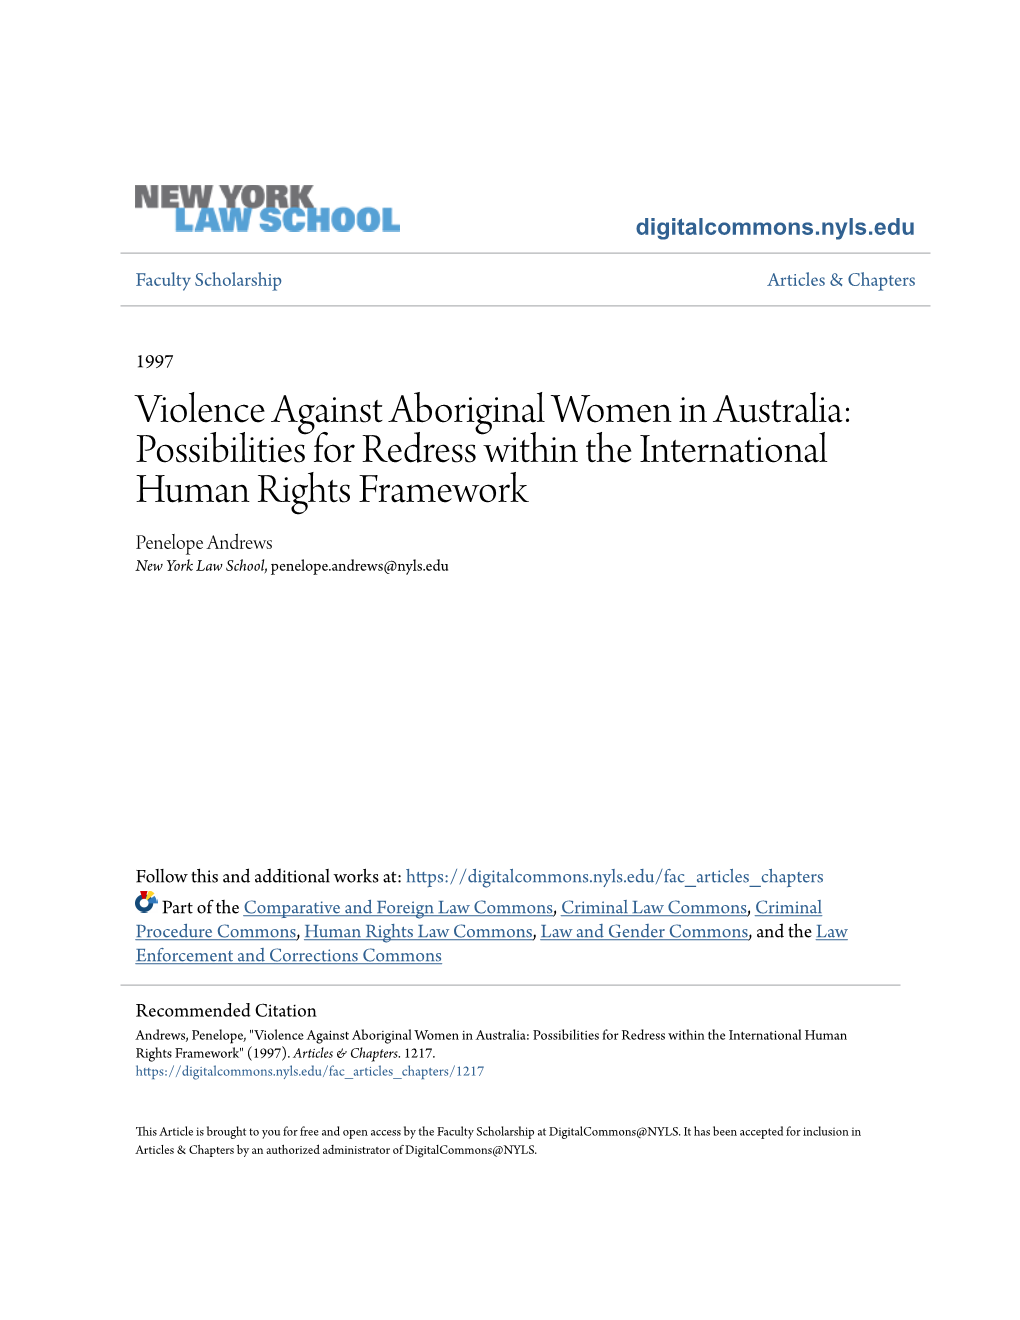 Violence Against Aboriginal Women in Australia